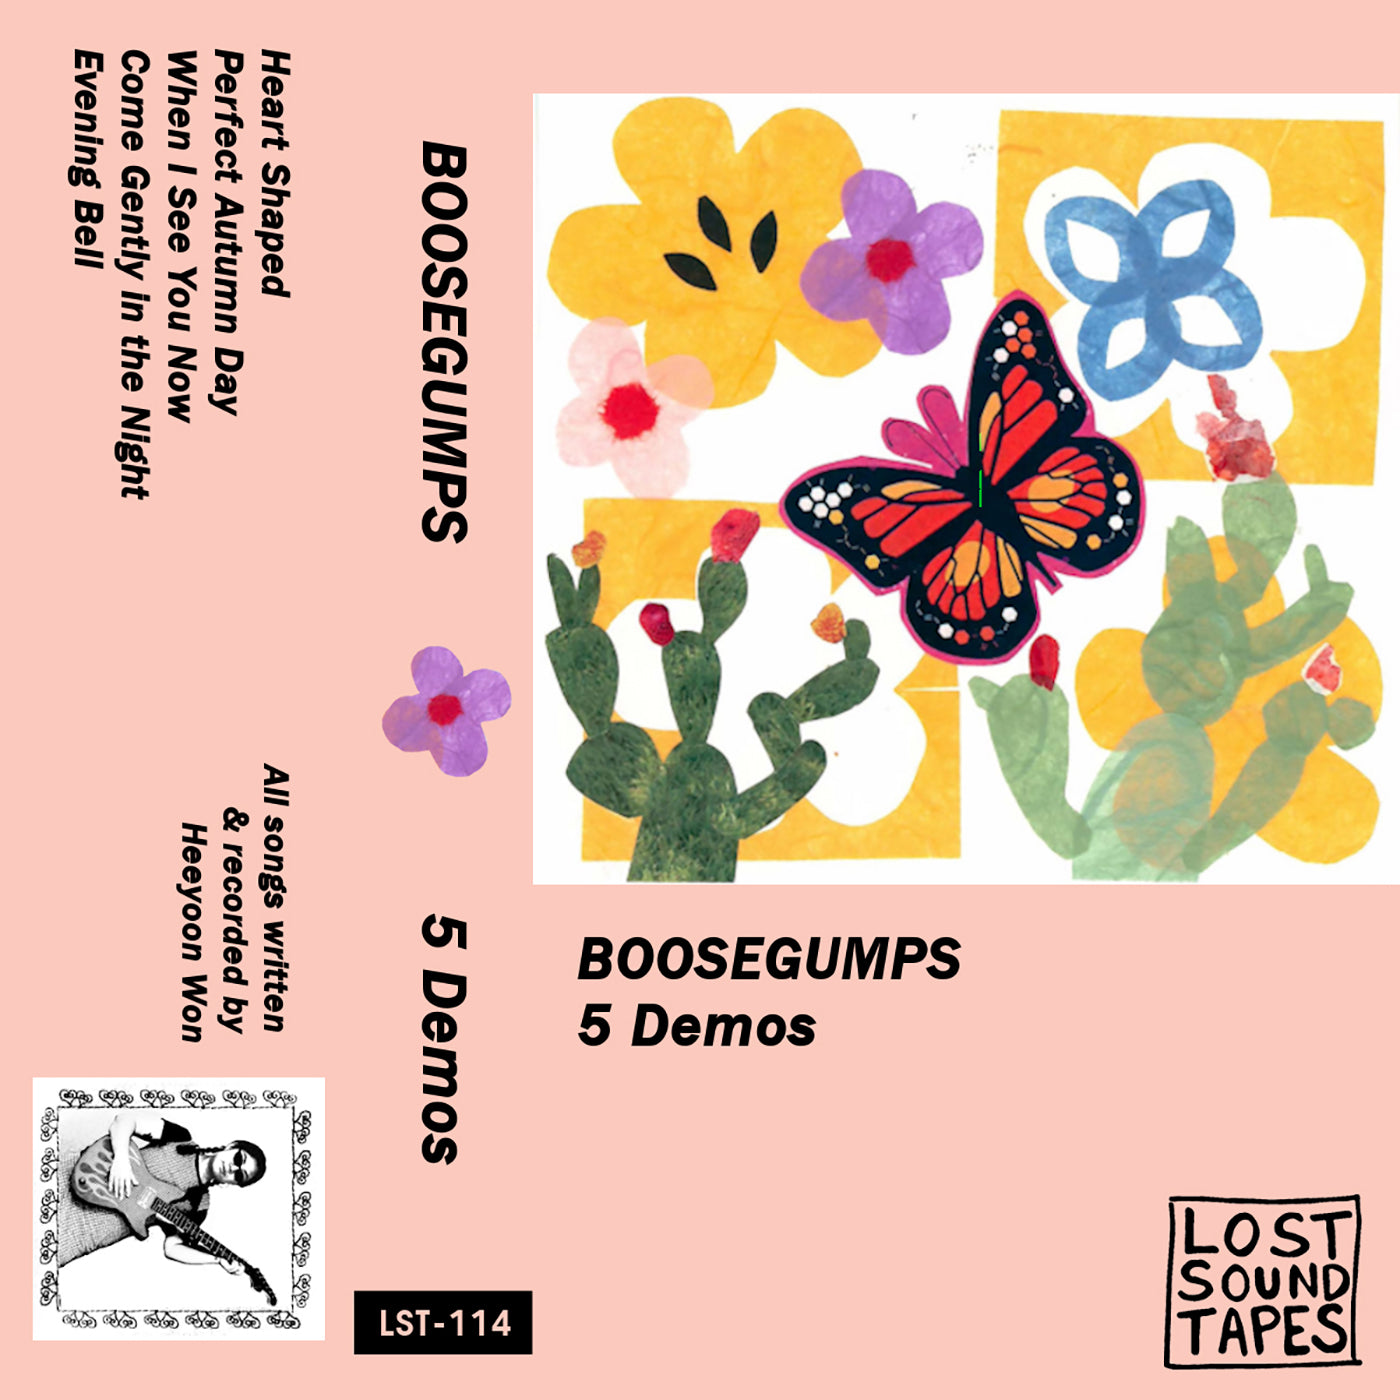 BOOSEGUMPS "5 Demos" cassette tape